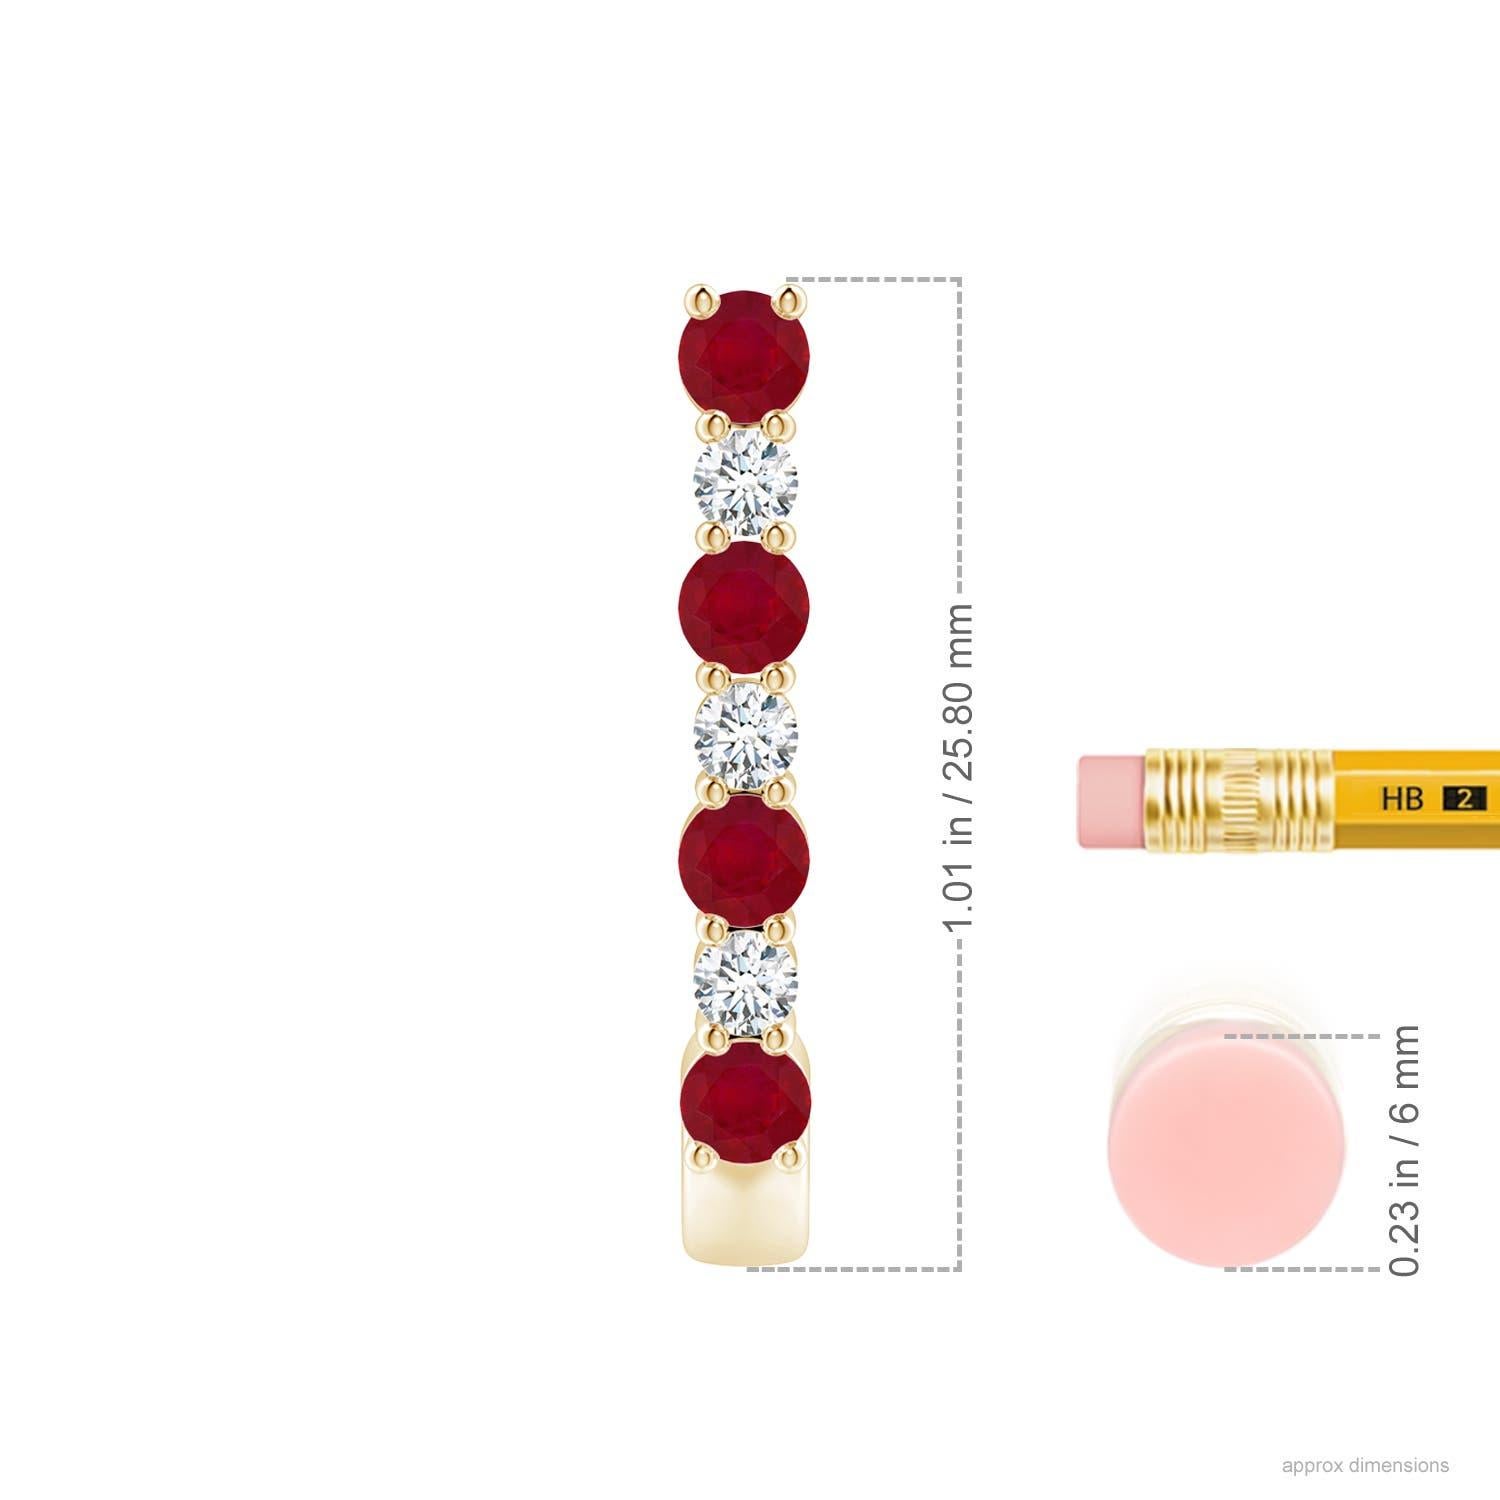 Ces étonnantes boucles d'oreilles en rubis et diamants sont délicatement réalisées en or jaune 14k. Les anneaux en J sont alternativement cloutés de rubis rouge vif et de diamants étincelants pour un effet captivant.
Le rubis est la pierre de